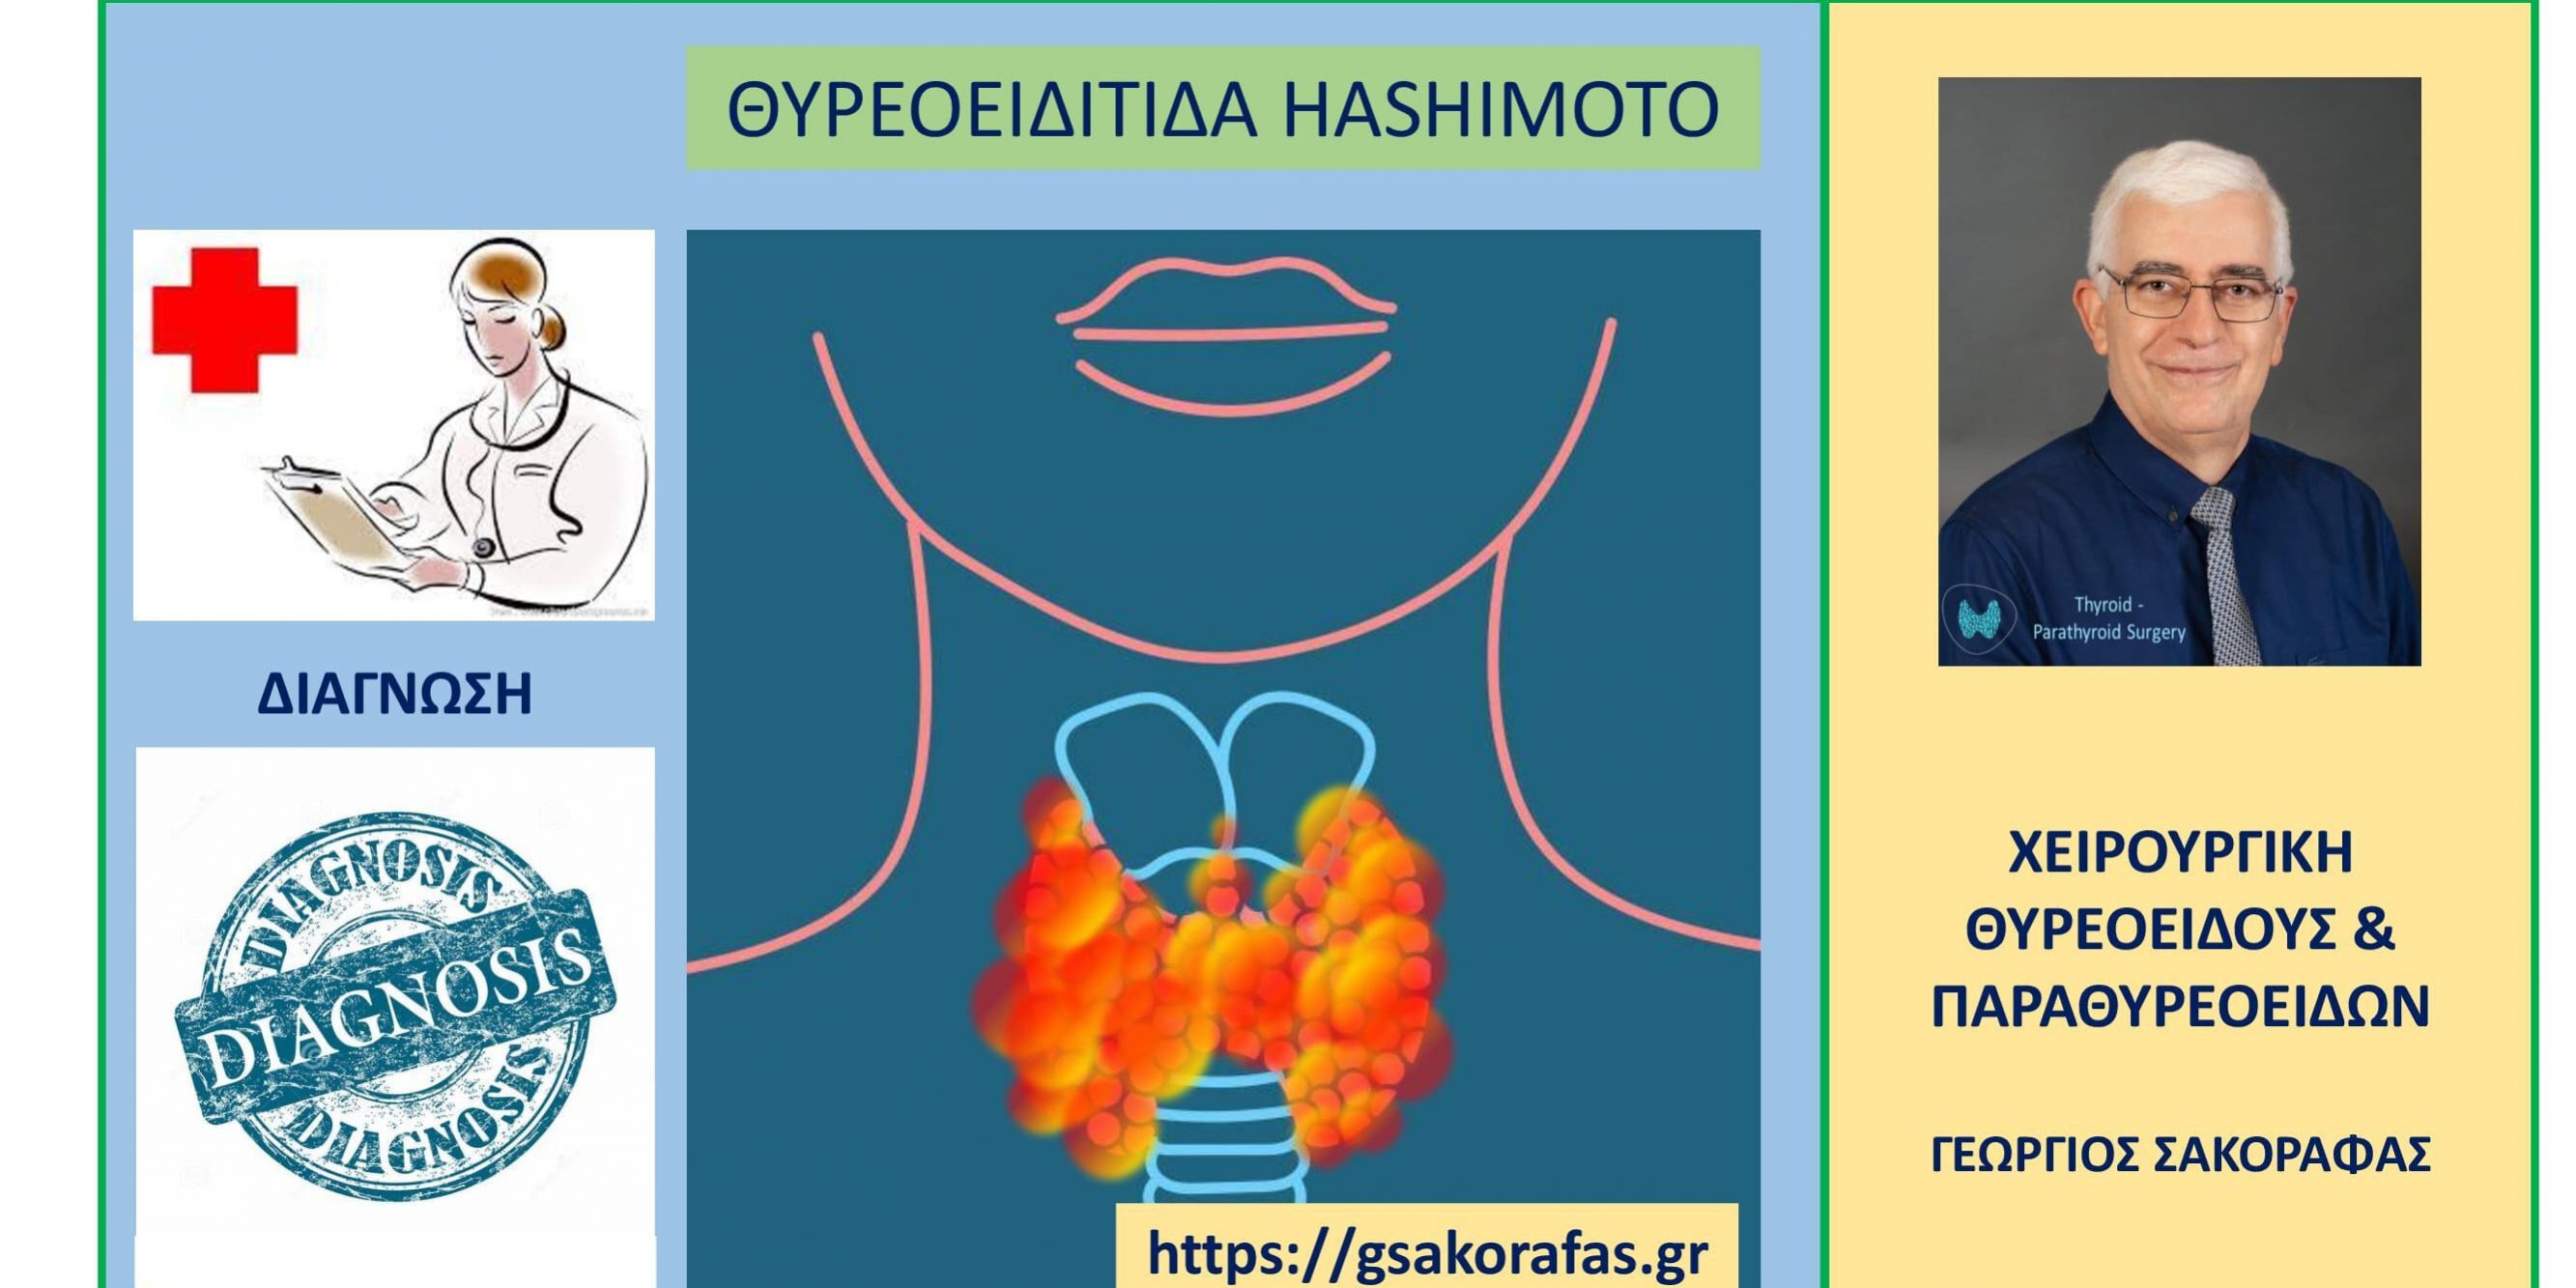 Θυρεοειδίτιδα Hashimoto και διάγνωση